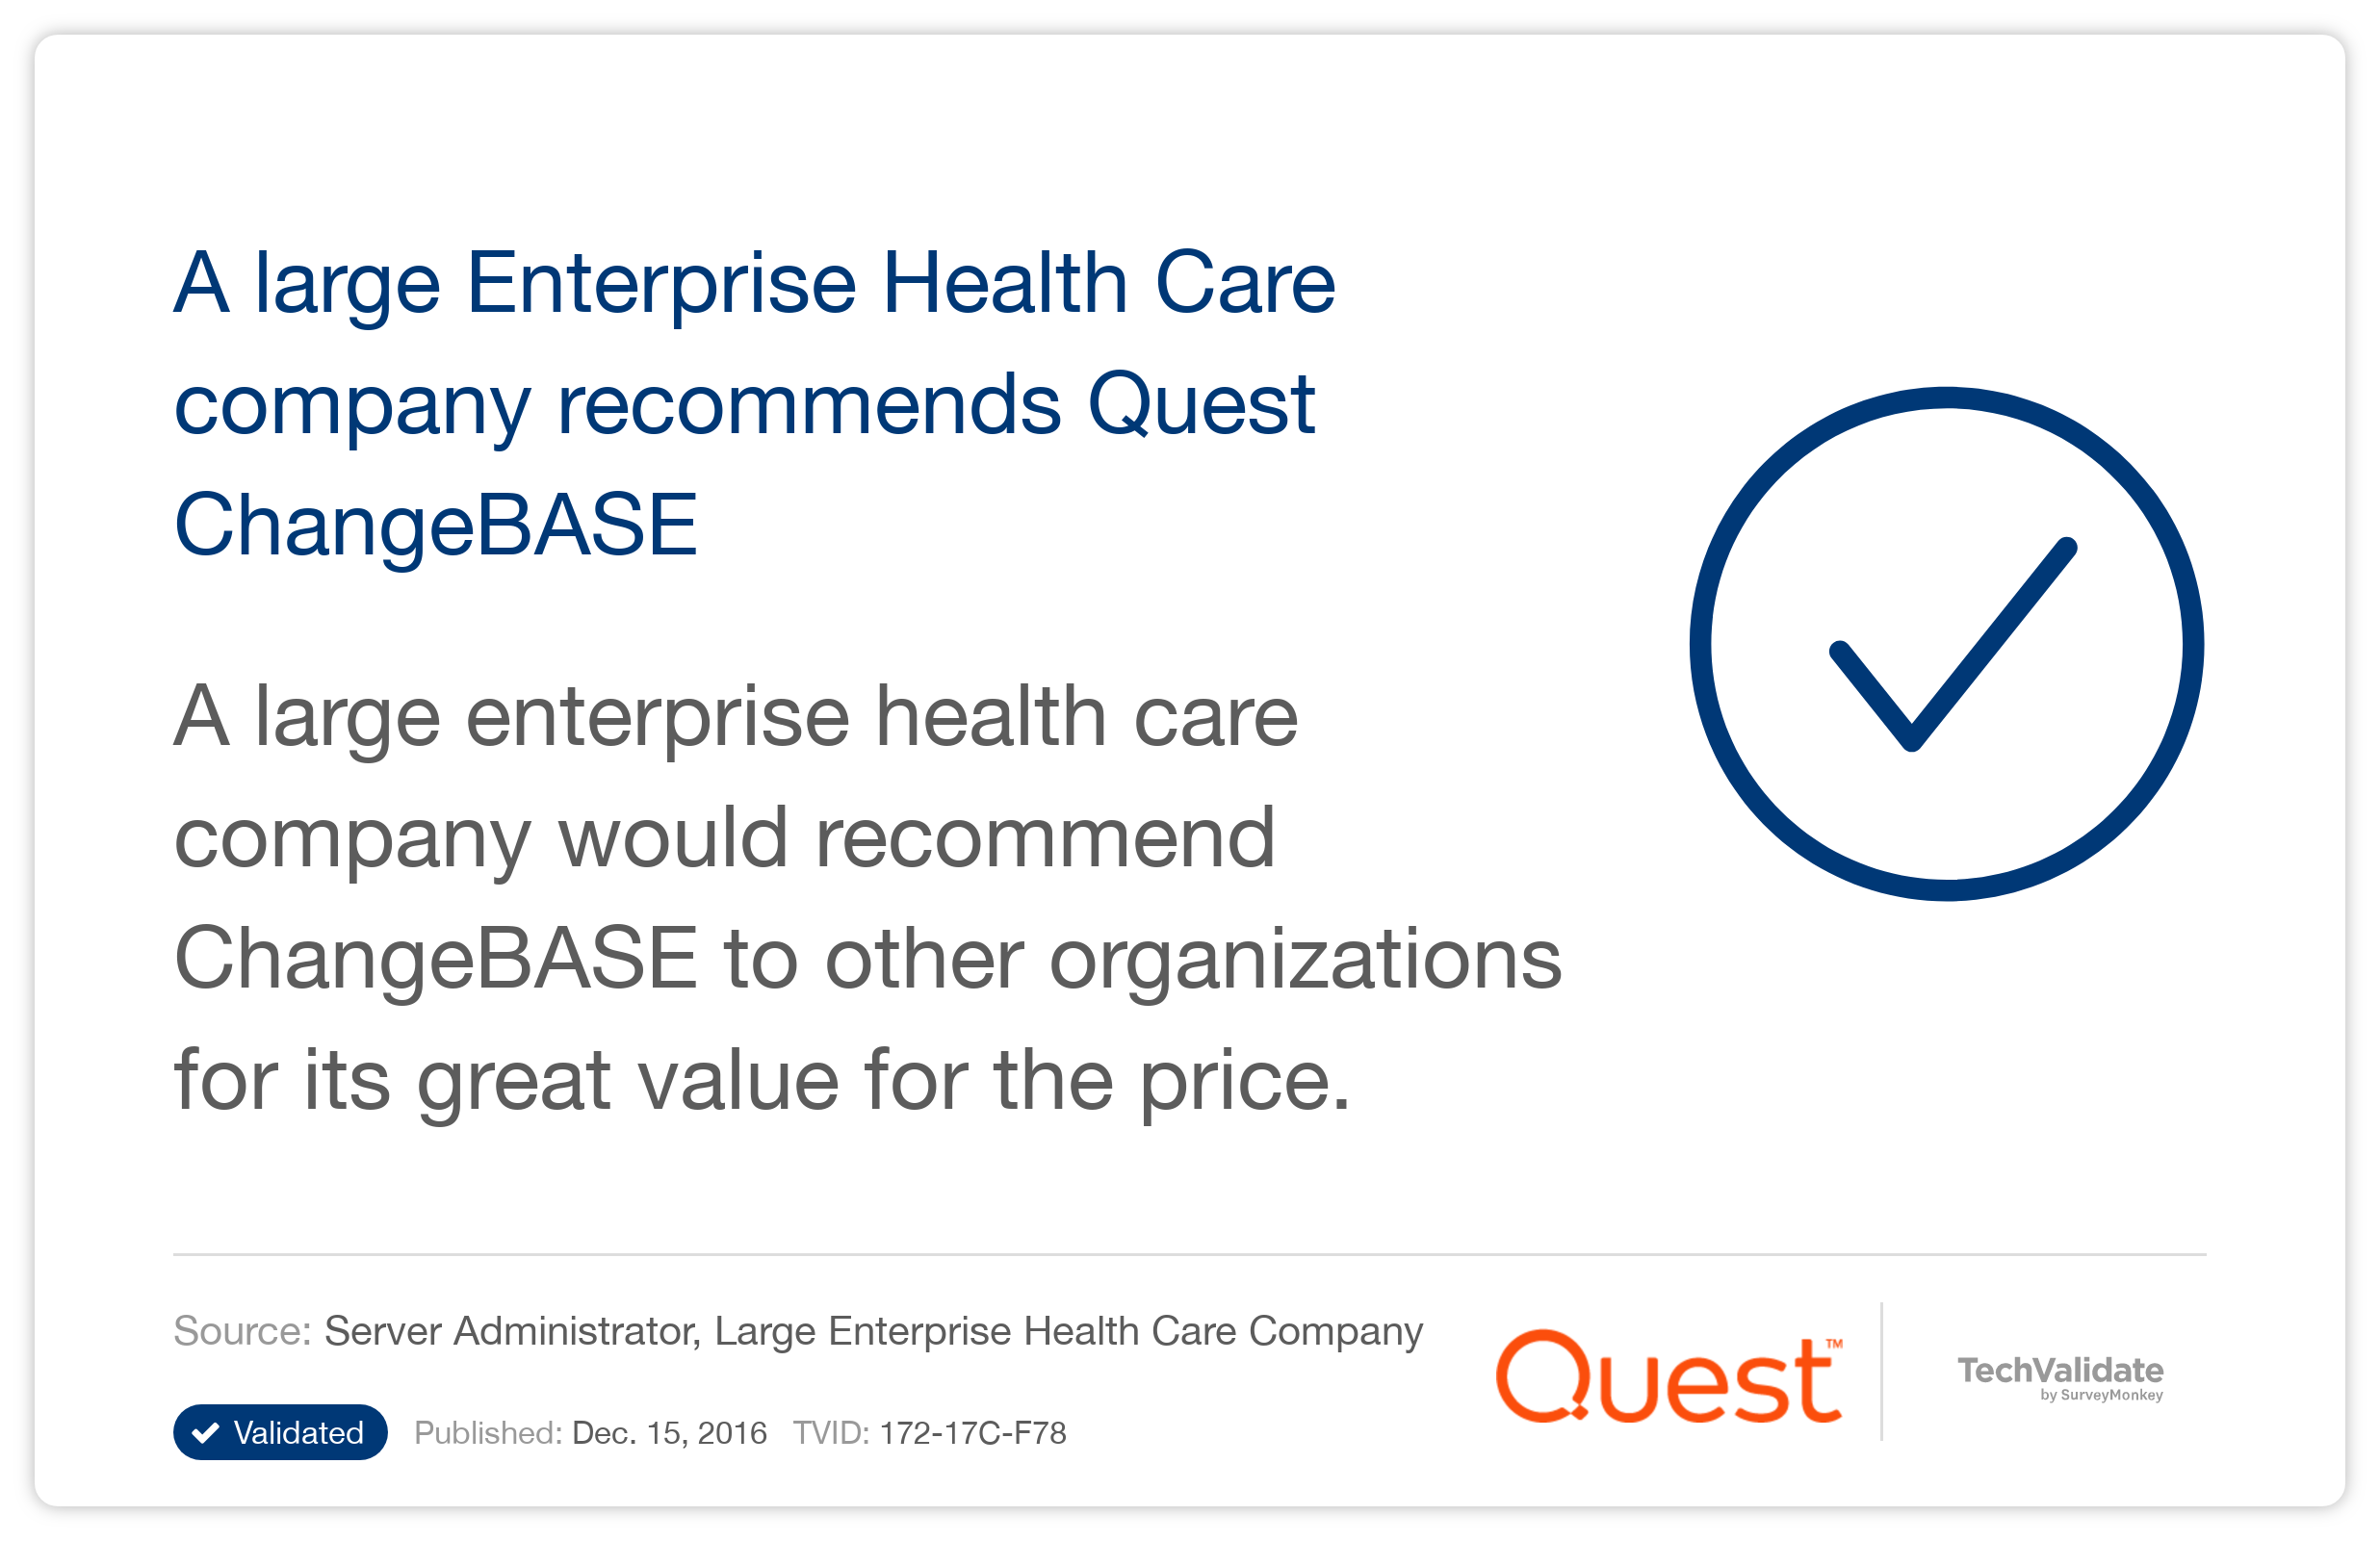 A large Enterprise Health Care company recommends Quest ChangeBASE